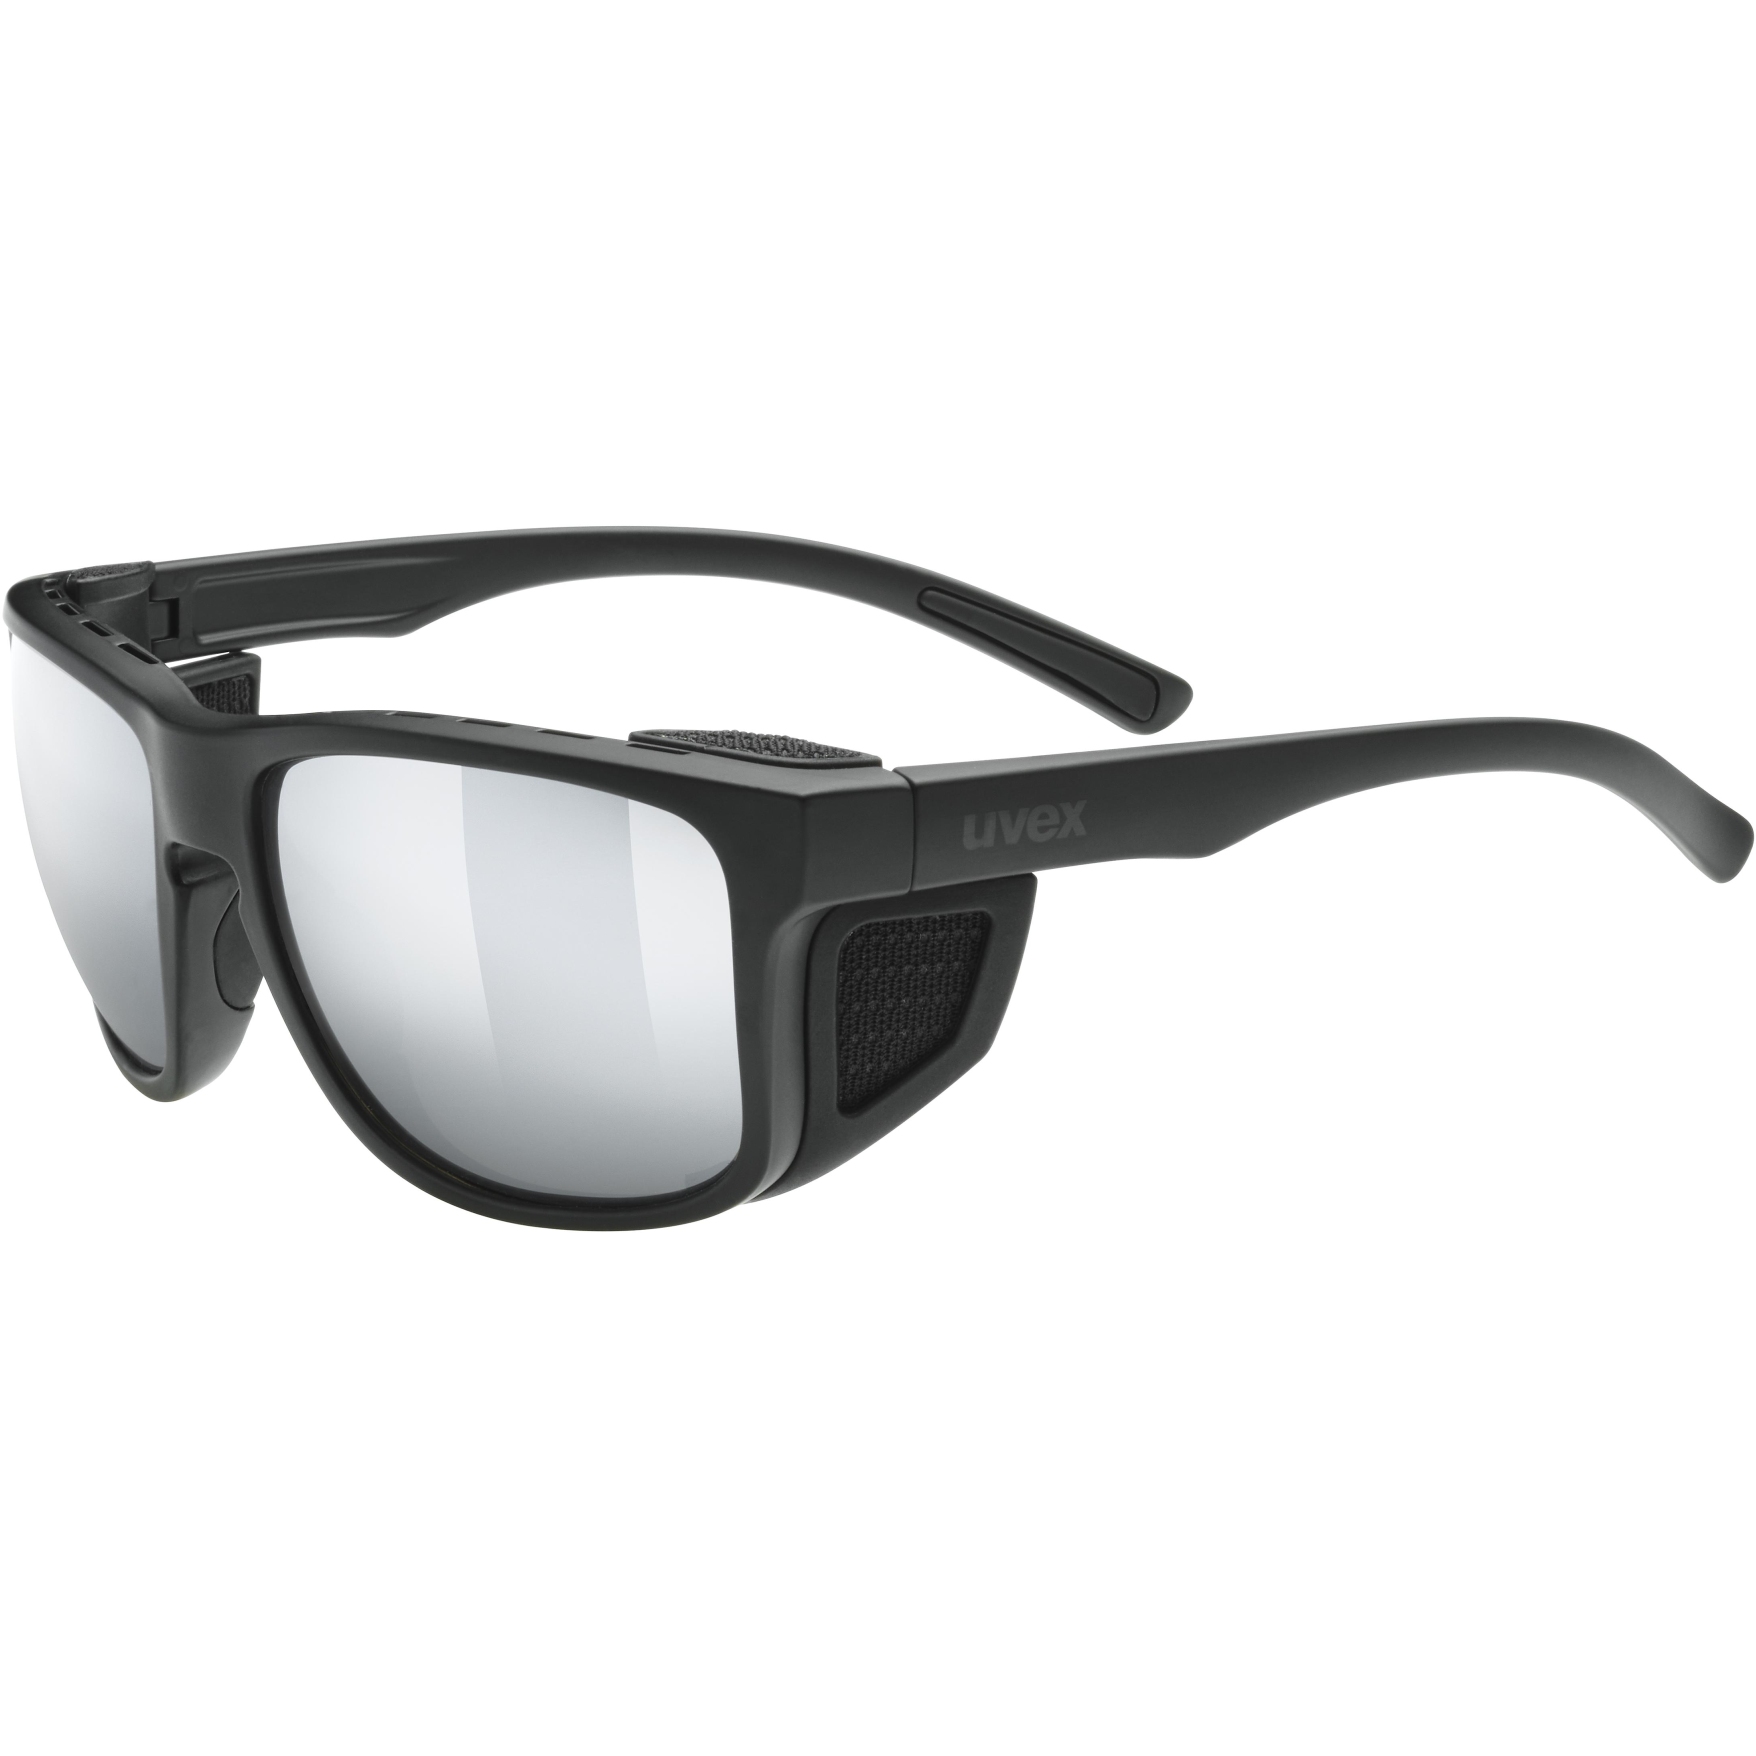 Produktbild von Uvex sportstyle 312 Brille - black mat/mirror silver